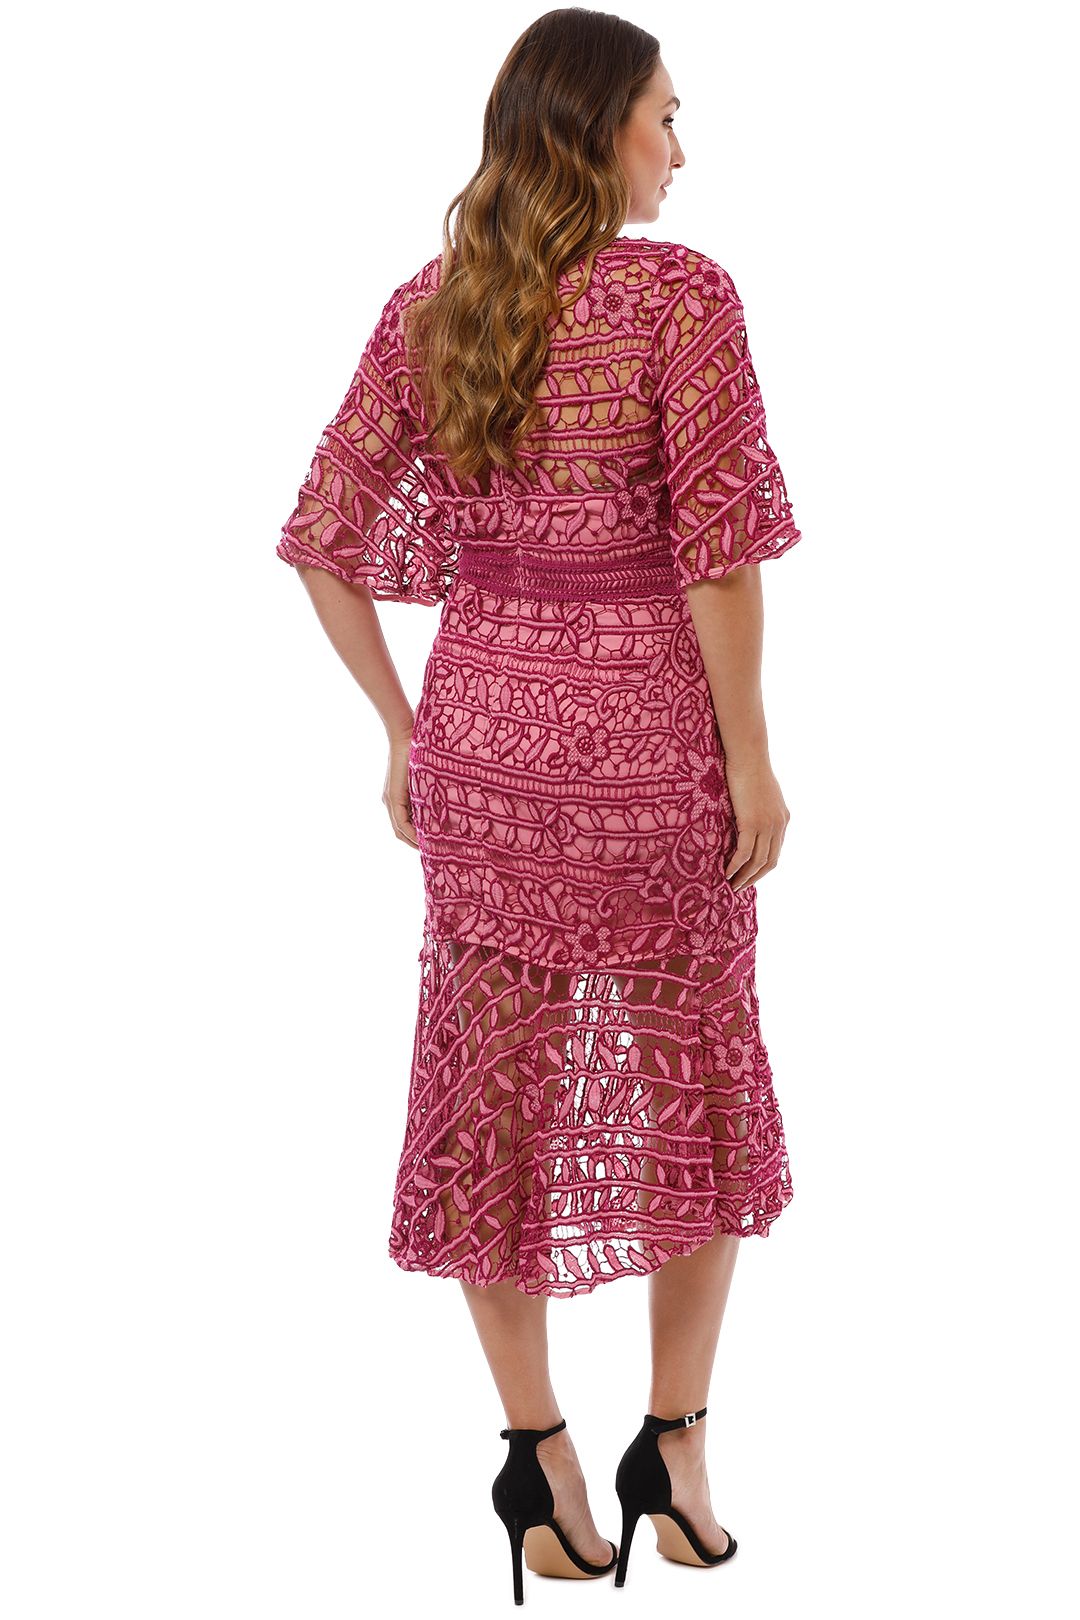 Talulah - Caprice Midi Dress - Pink Multi - Back